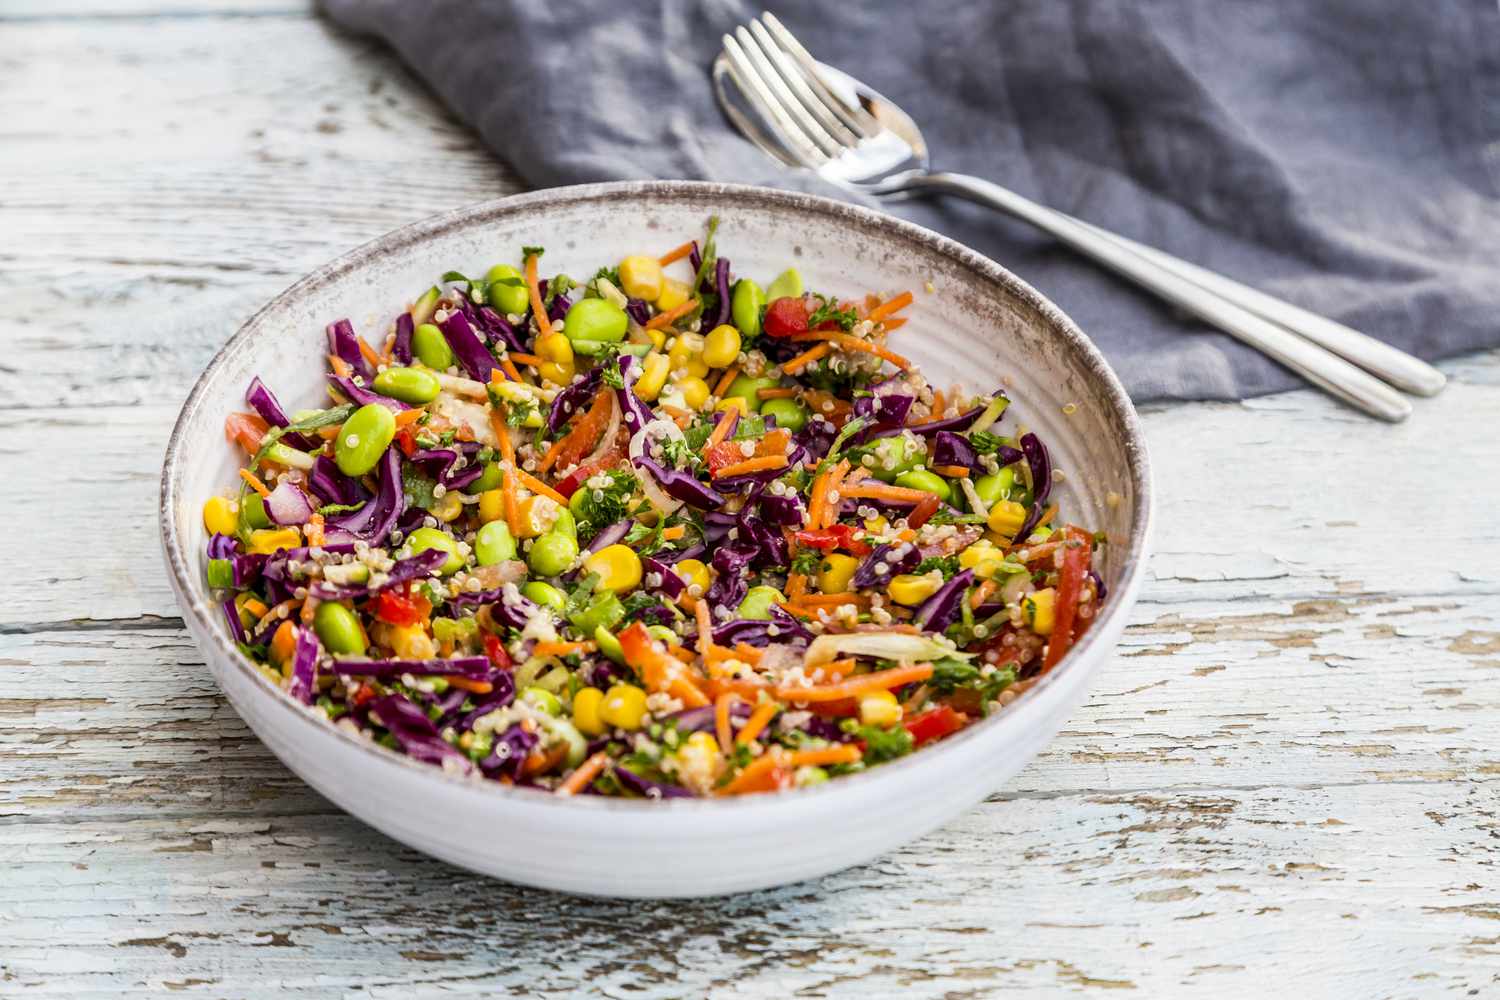 a colorful quinoa salad in a white bowl